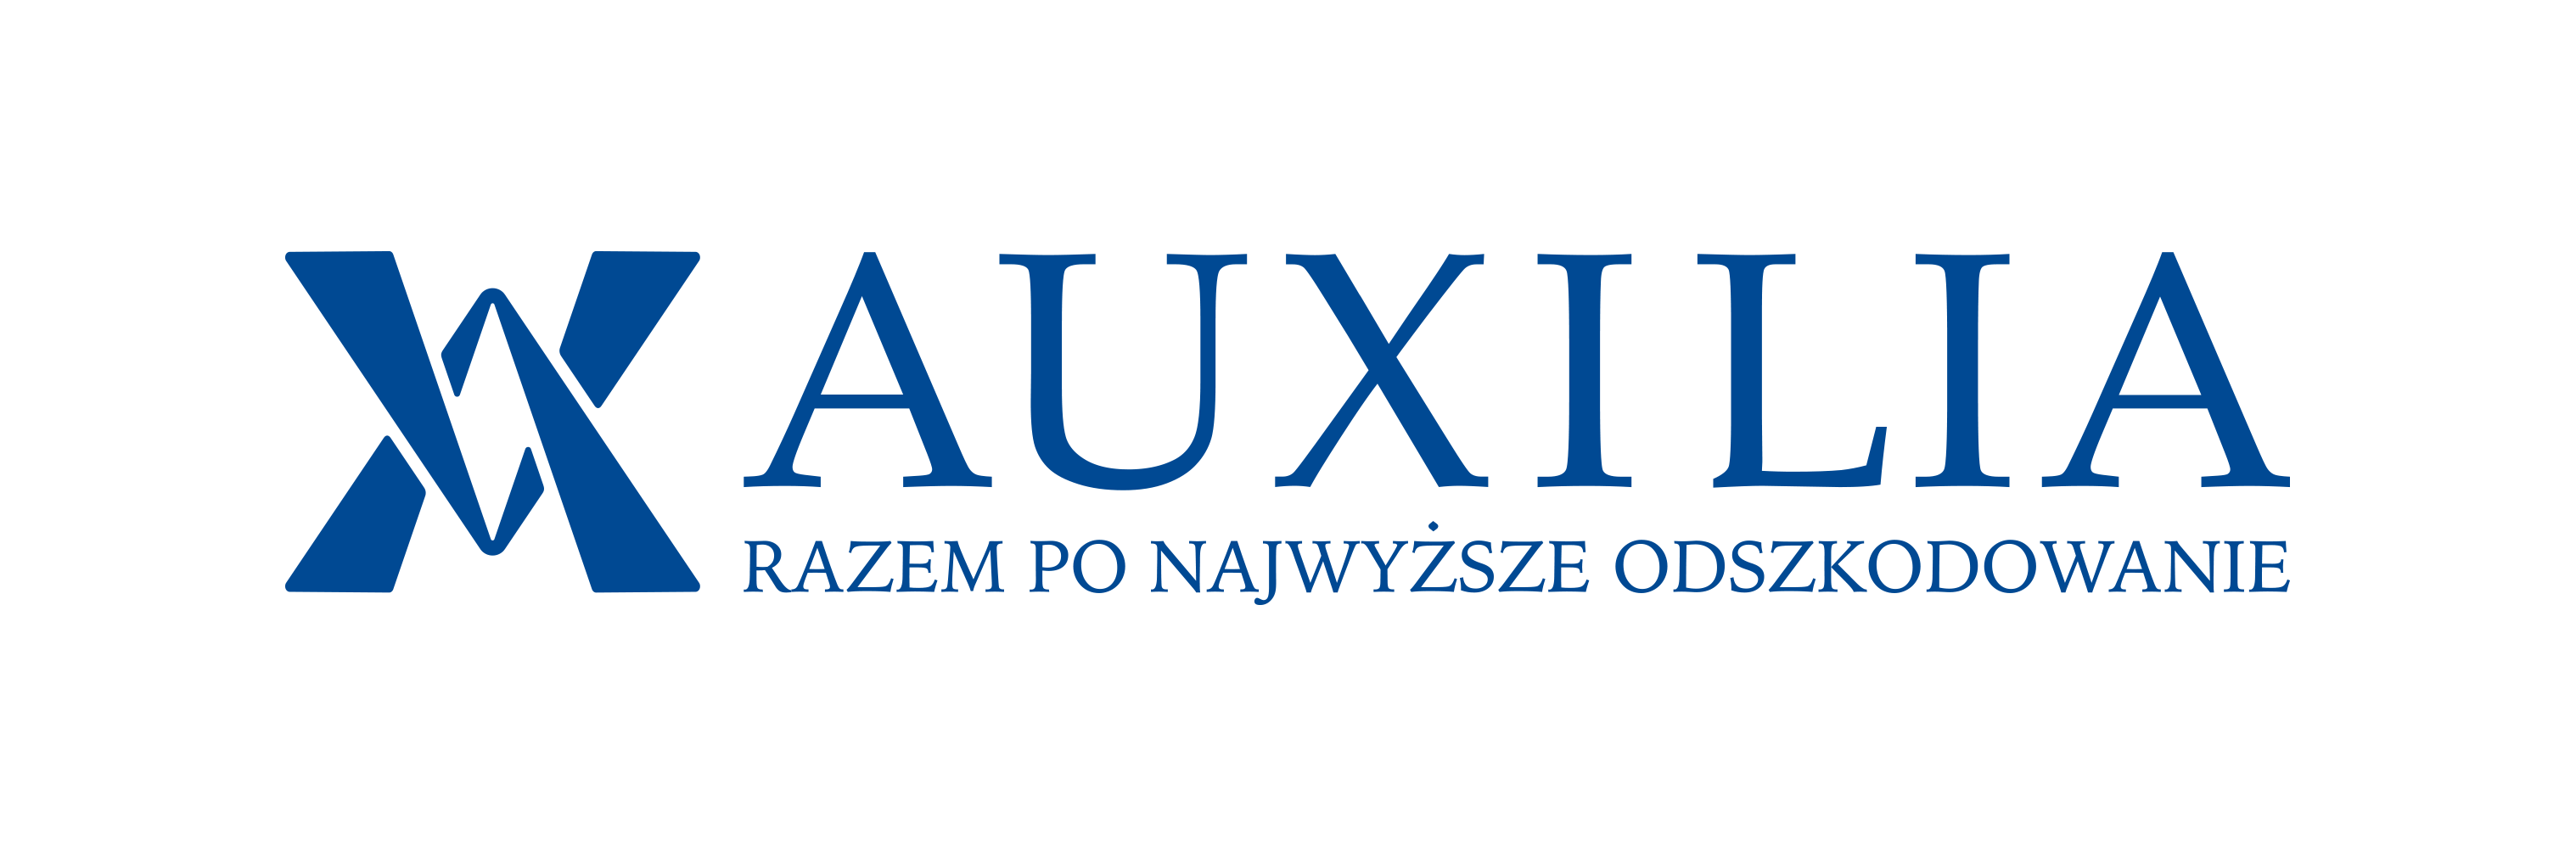 Auxilia prezentuje wyniki po pierwszym półroczu 2016 roku